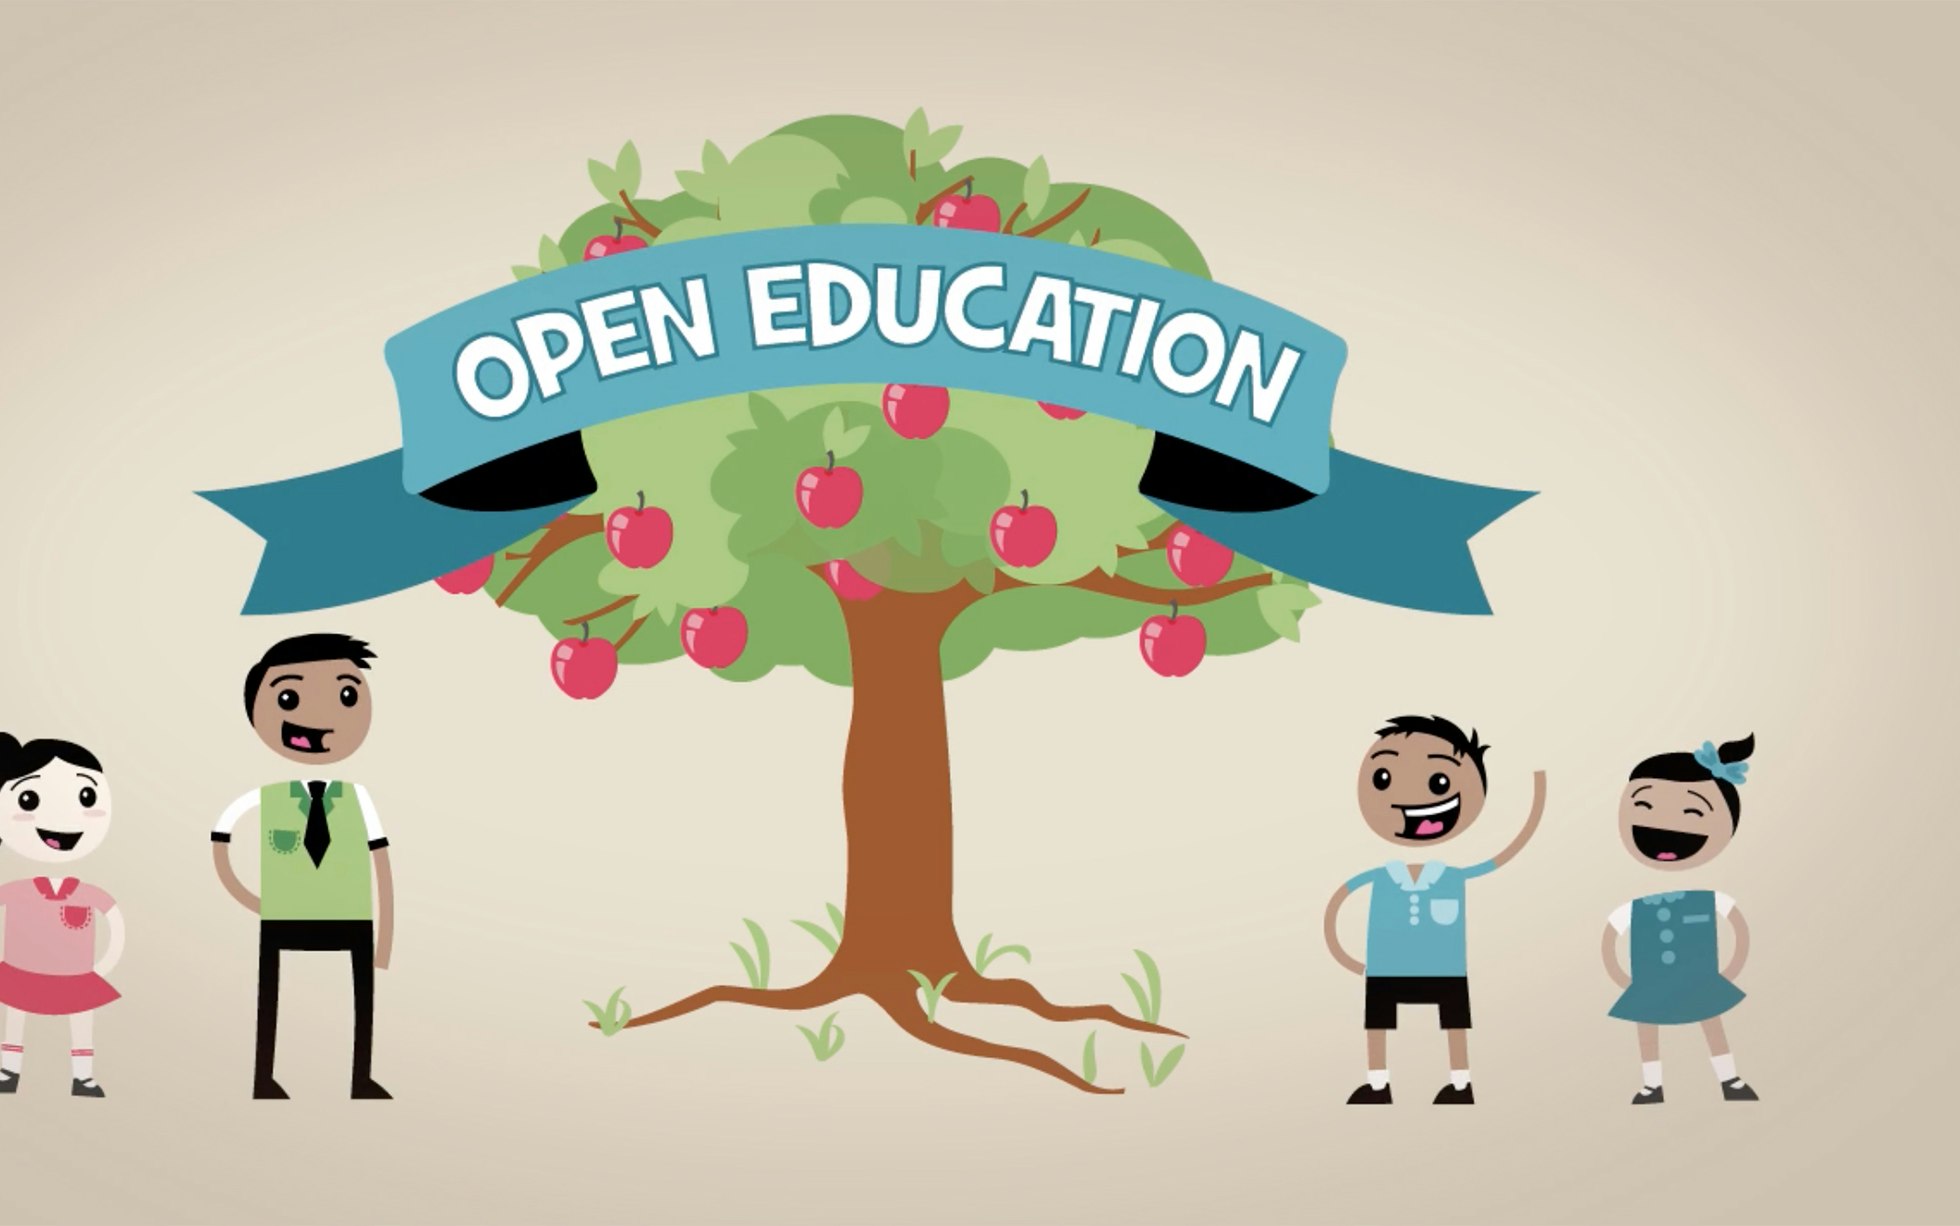 open education